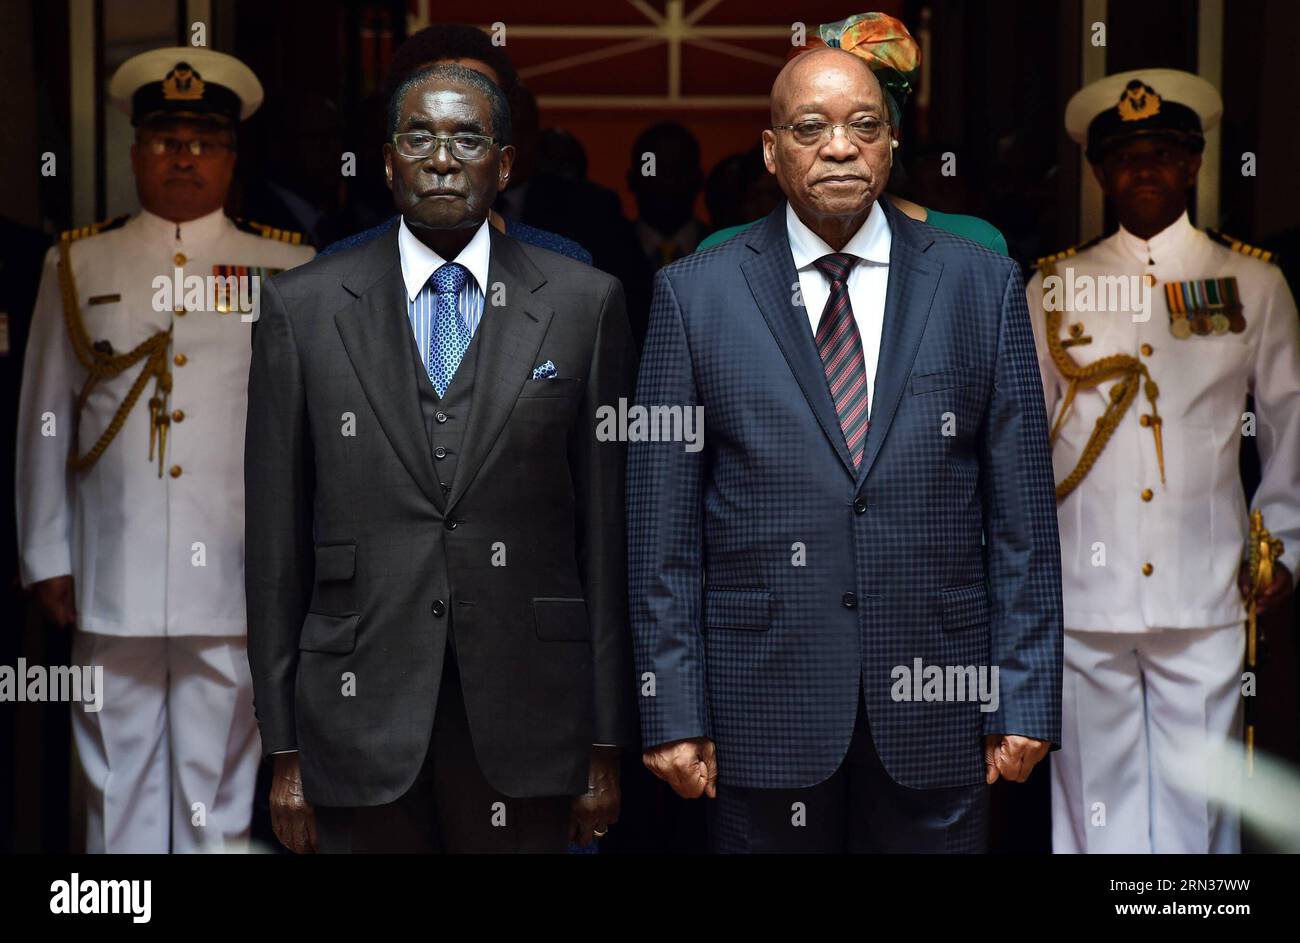 Il presidente sudafricano Jacob Zuma (fronte R) ospita una cerimonia di benvenuto per il presidente dello Zimbabwe Robert Mugabe (fronte L) a Pretoria l'8 aprile 2015. I due leader hanno tenuto colloqui mercoledì sui modi per rafforzare i legami bilaterali. ) (lmz) VISITA DEL PRESIDENTE SUDAFRICANO-DELLO ZIMBABWE DOC/ElmondxJiyane PUBLICATIONxNOTxINxCHN Foto Stock